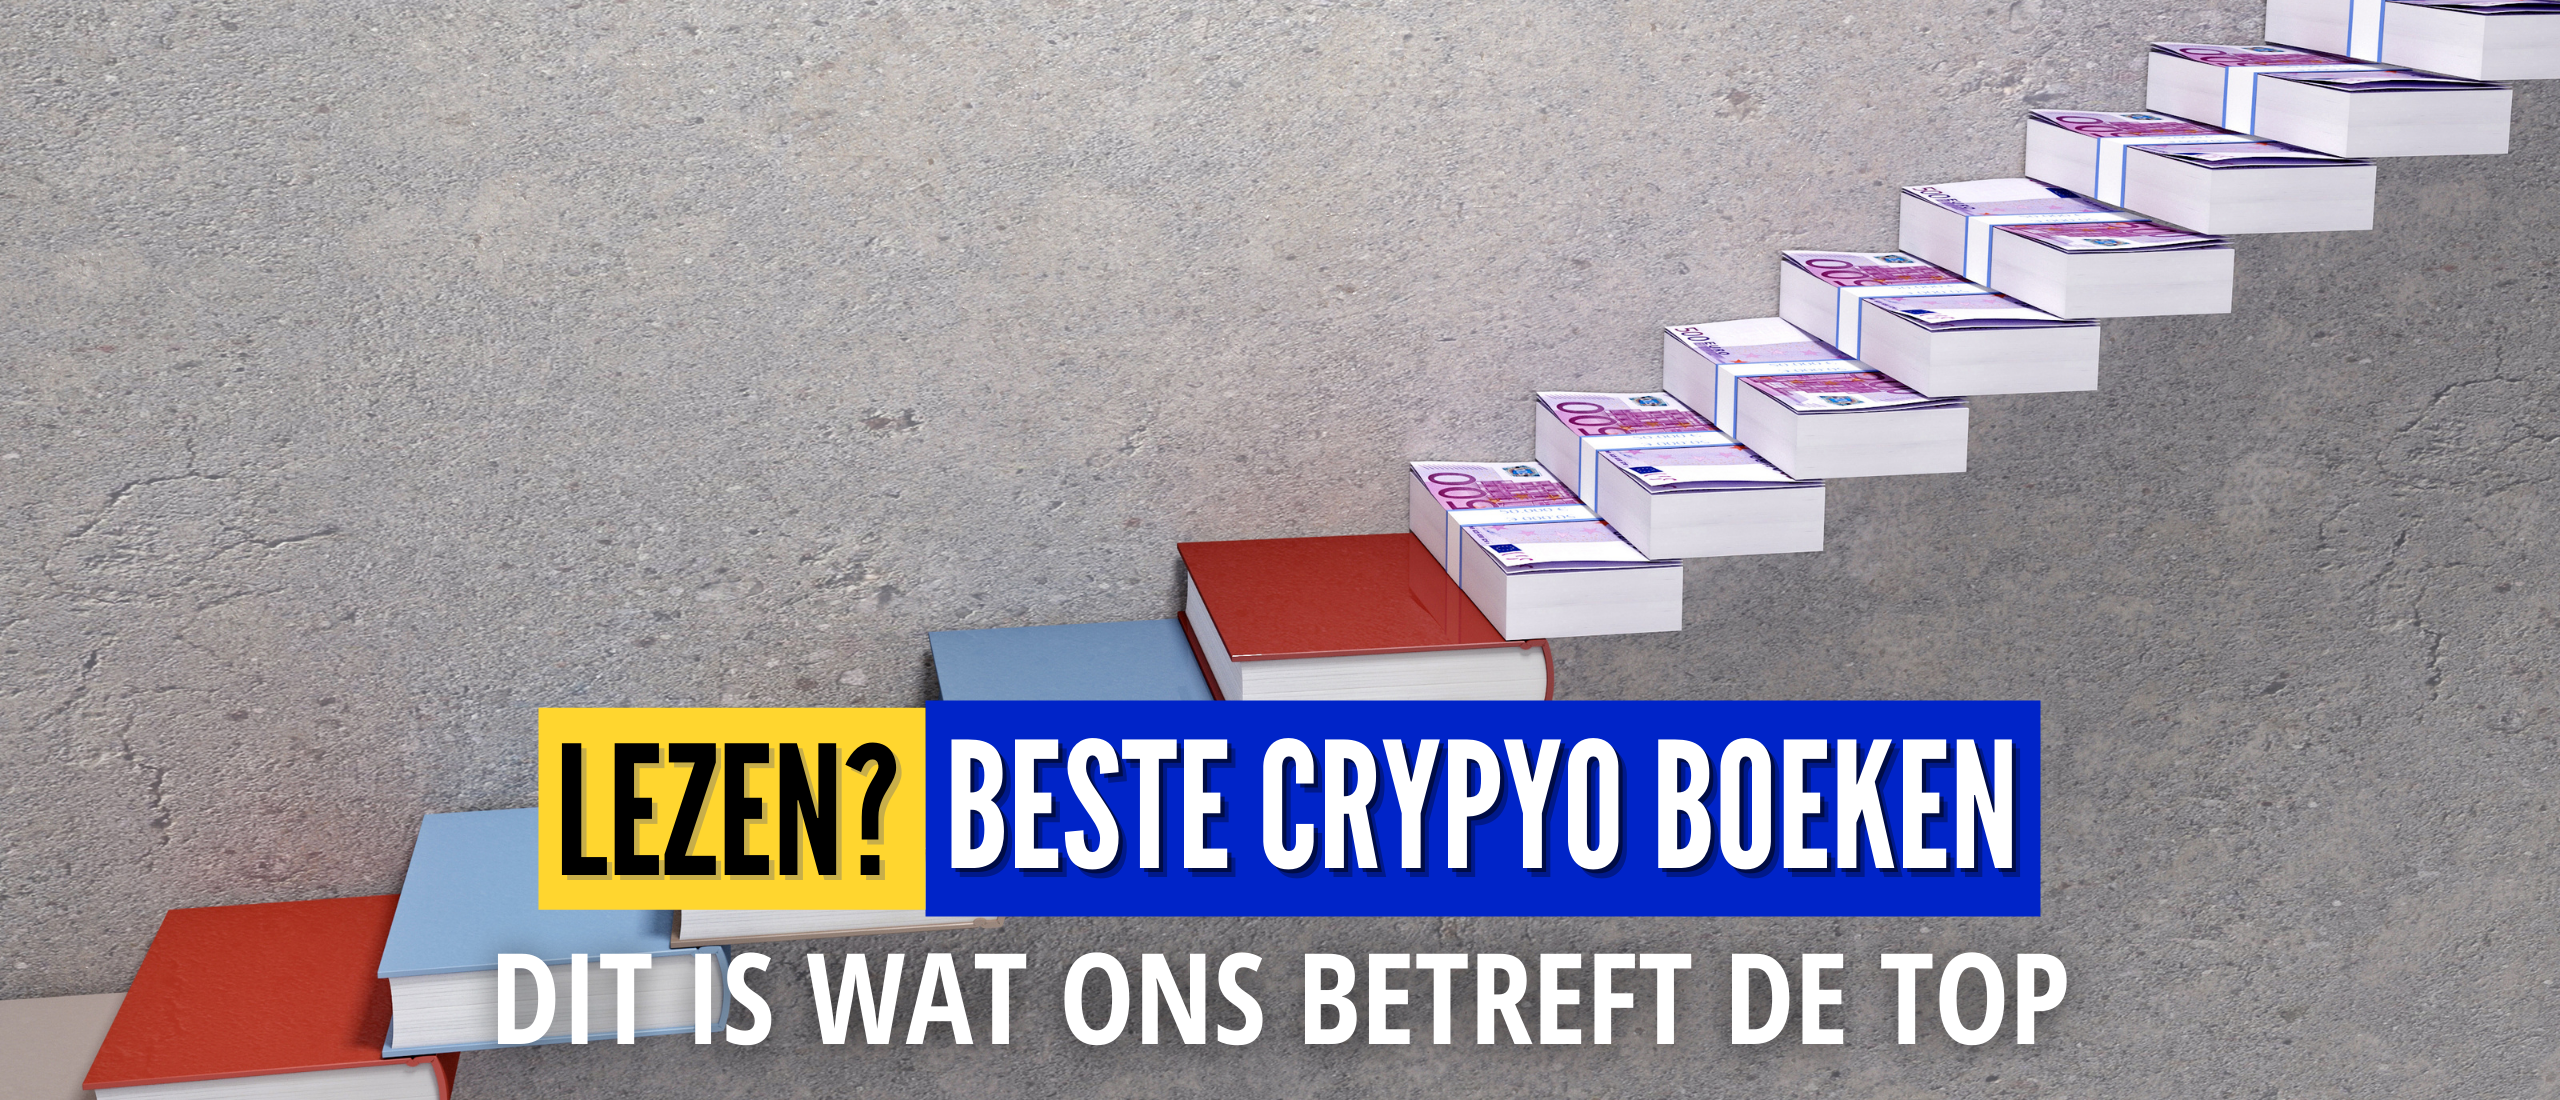 Beste Crypto Boek? Top 5 Crypto Boeken in NL/BE [Gratis + Betaald]